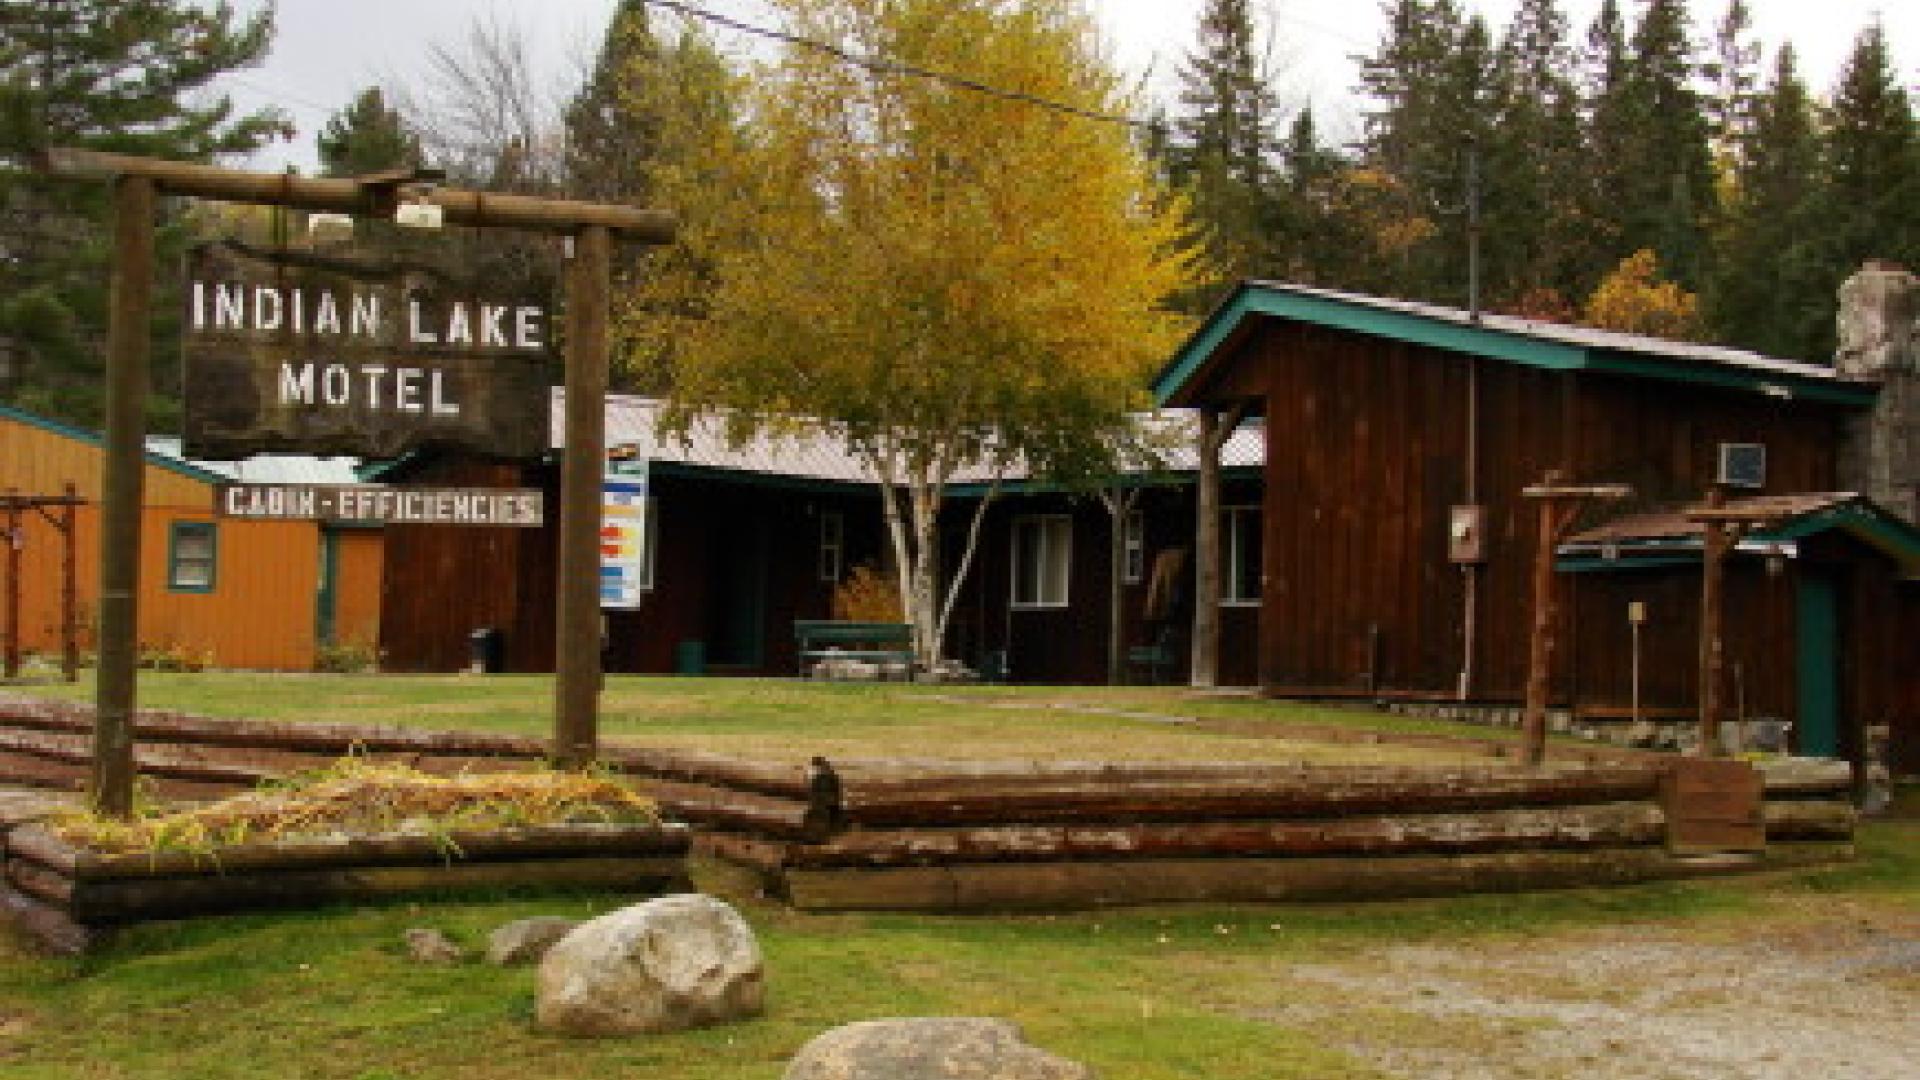 Indian Lake Motel